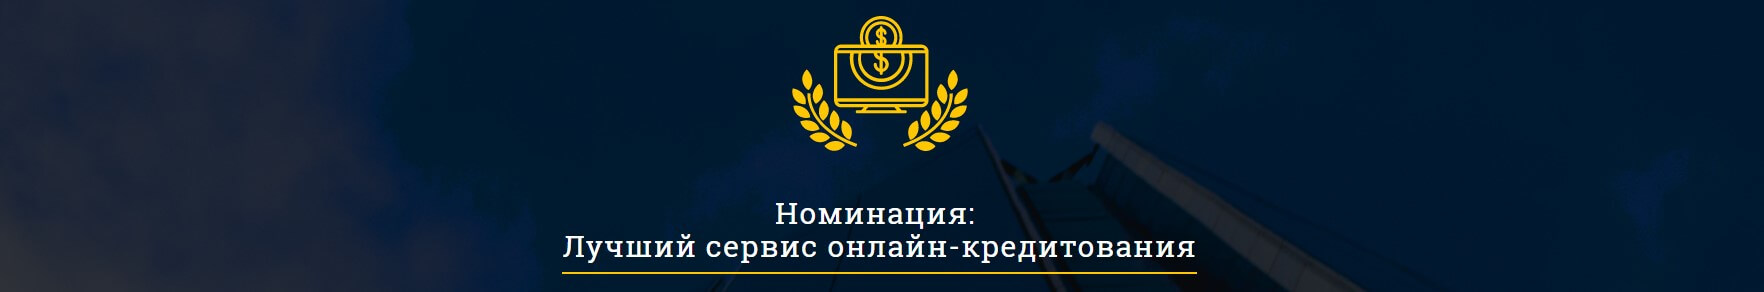 Moneyveo визнали найкращим сервісом онлайн-кредитування в Україні